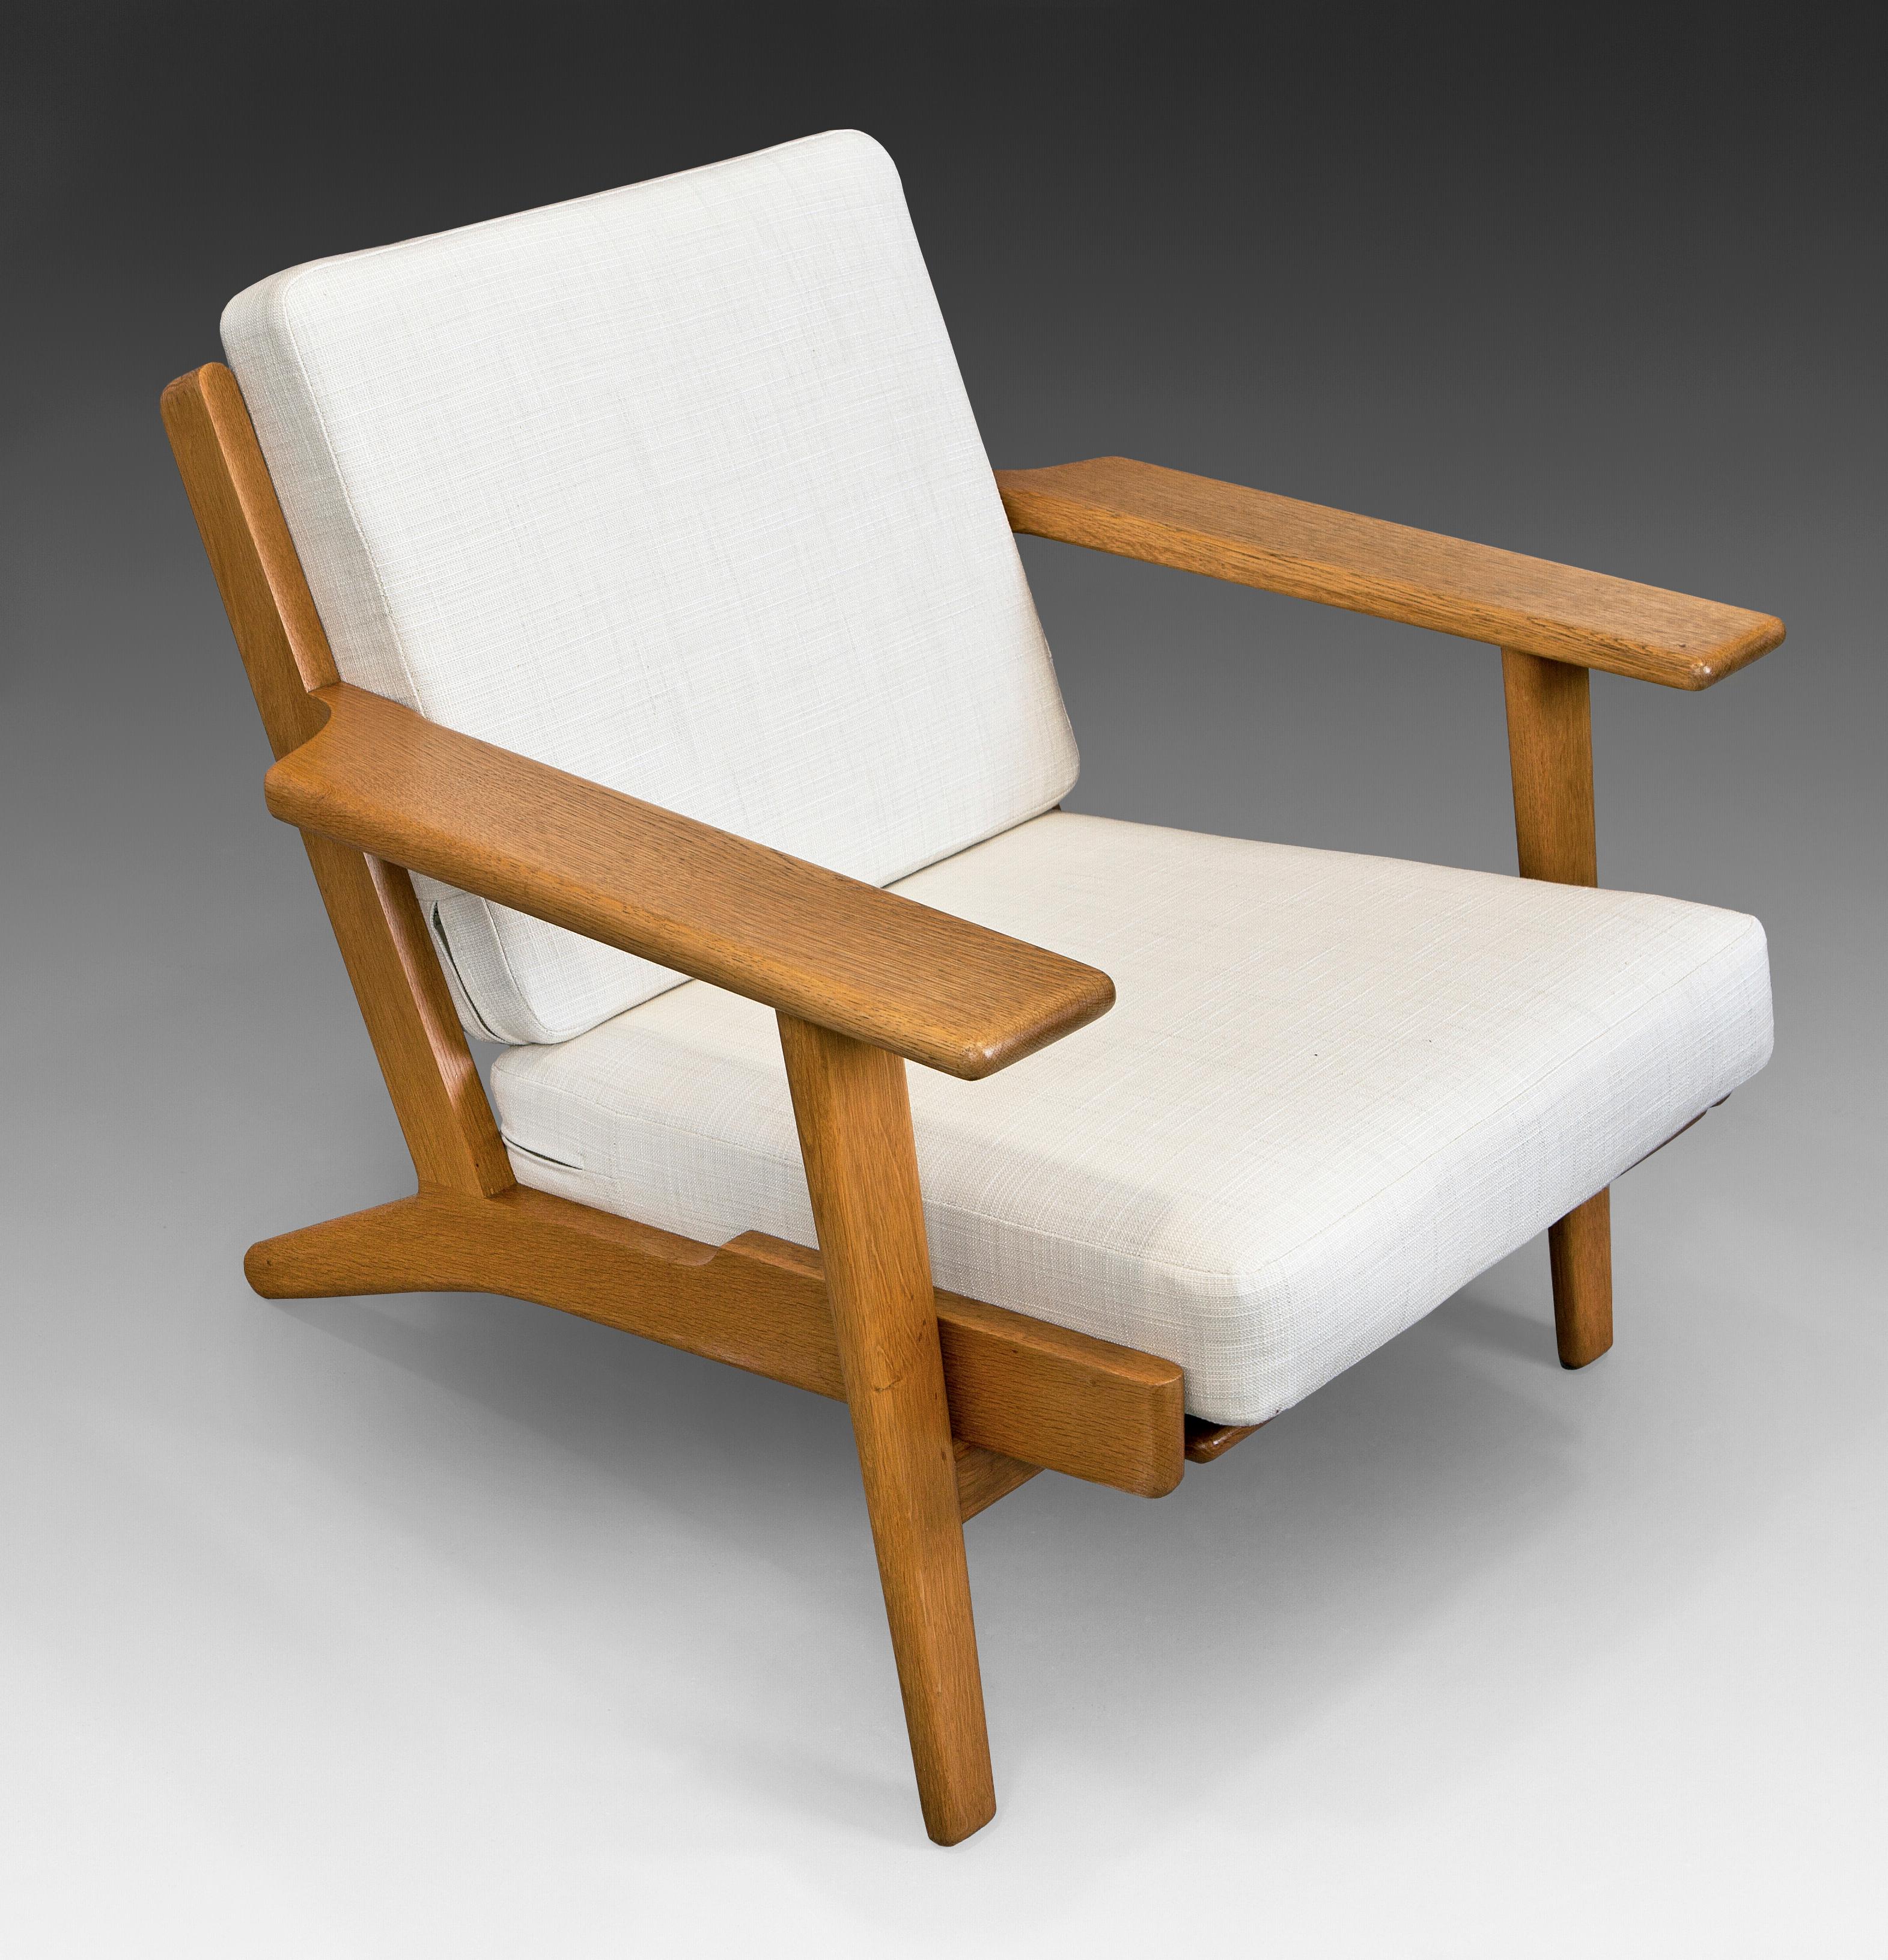 G290 Sessel aus massiver Eiche und Polsterung, entworfen von Hans J. Wegner für Getama. Das Modell G290 mit hoher Rückenlehne ist ebenfalls erhältlich, siehe Bilder für weitere Informationen.
Dänemark, 1950er Jahre. Vollständig restauriert und neu